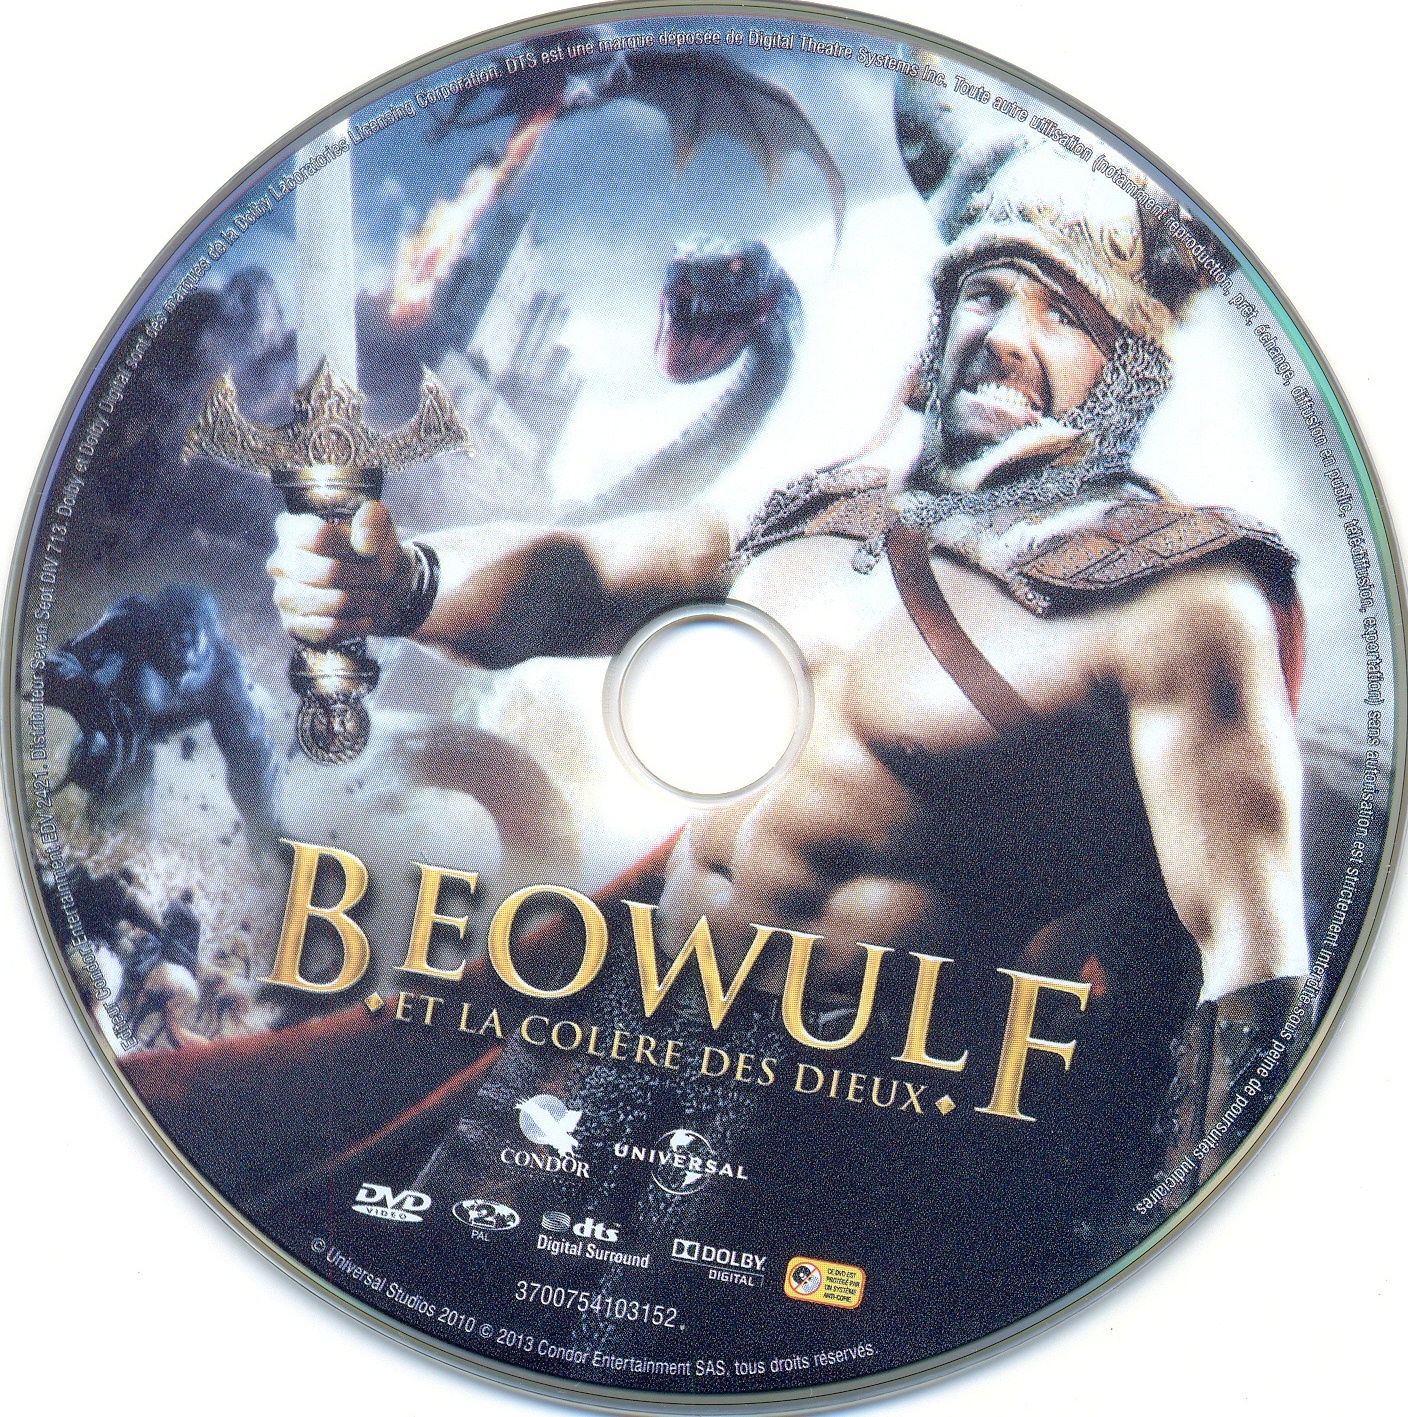 Beowulf et la colre des dieux